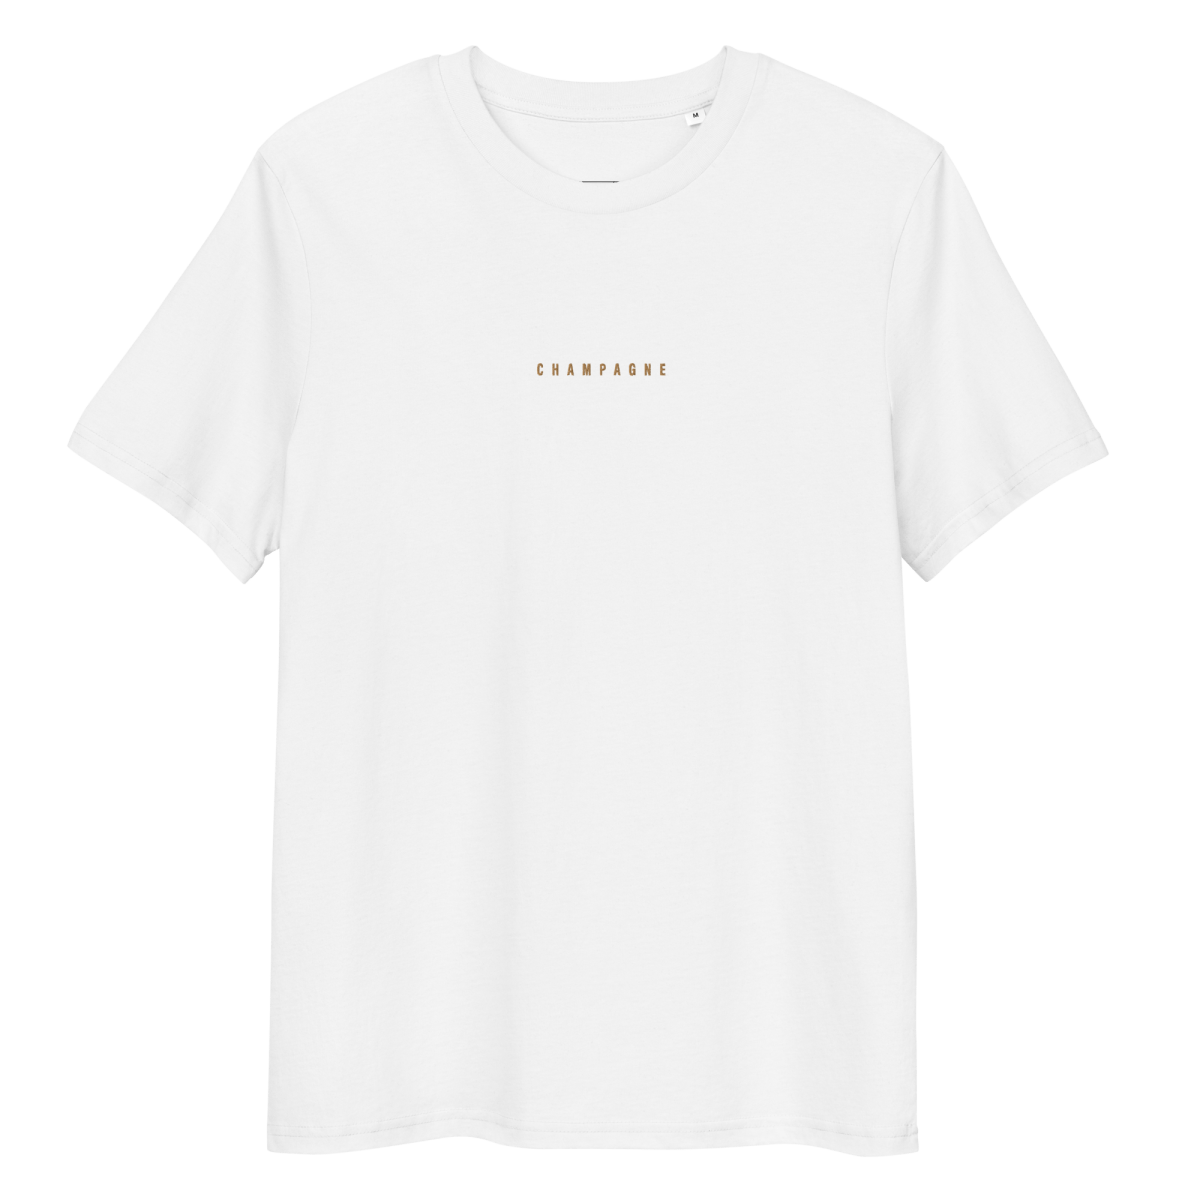 Das Champagne Bio T-Shirt